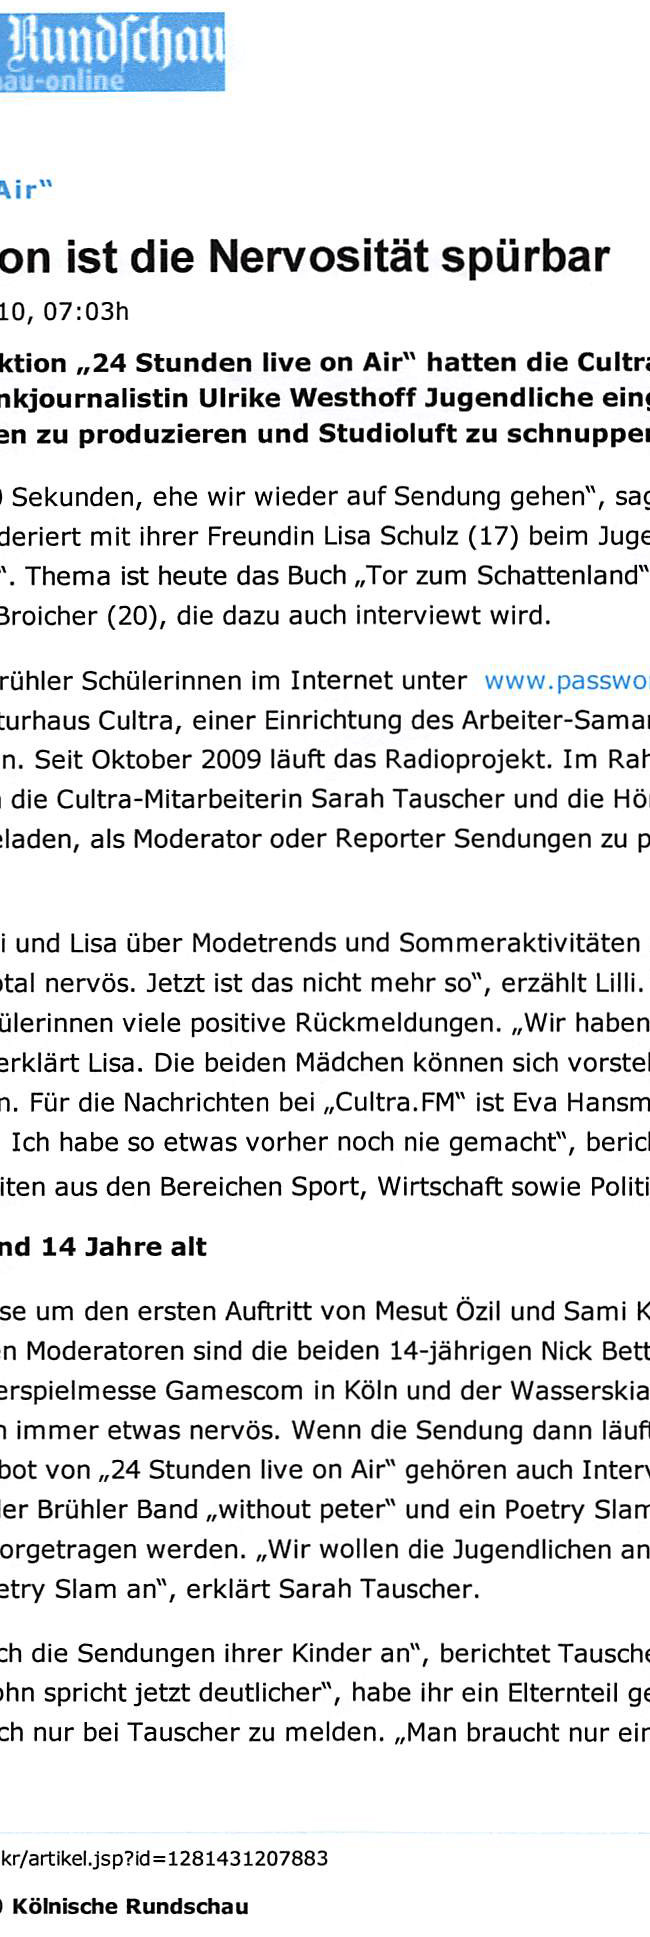 Presseartikel Kölnische Rundschau Online vom 26.08.2010